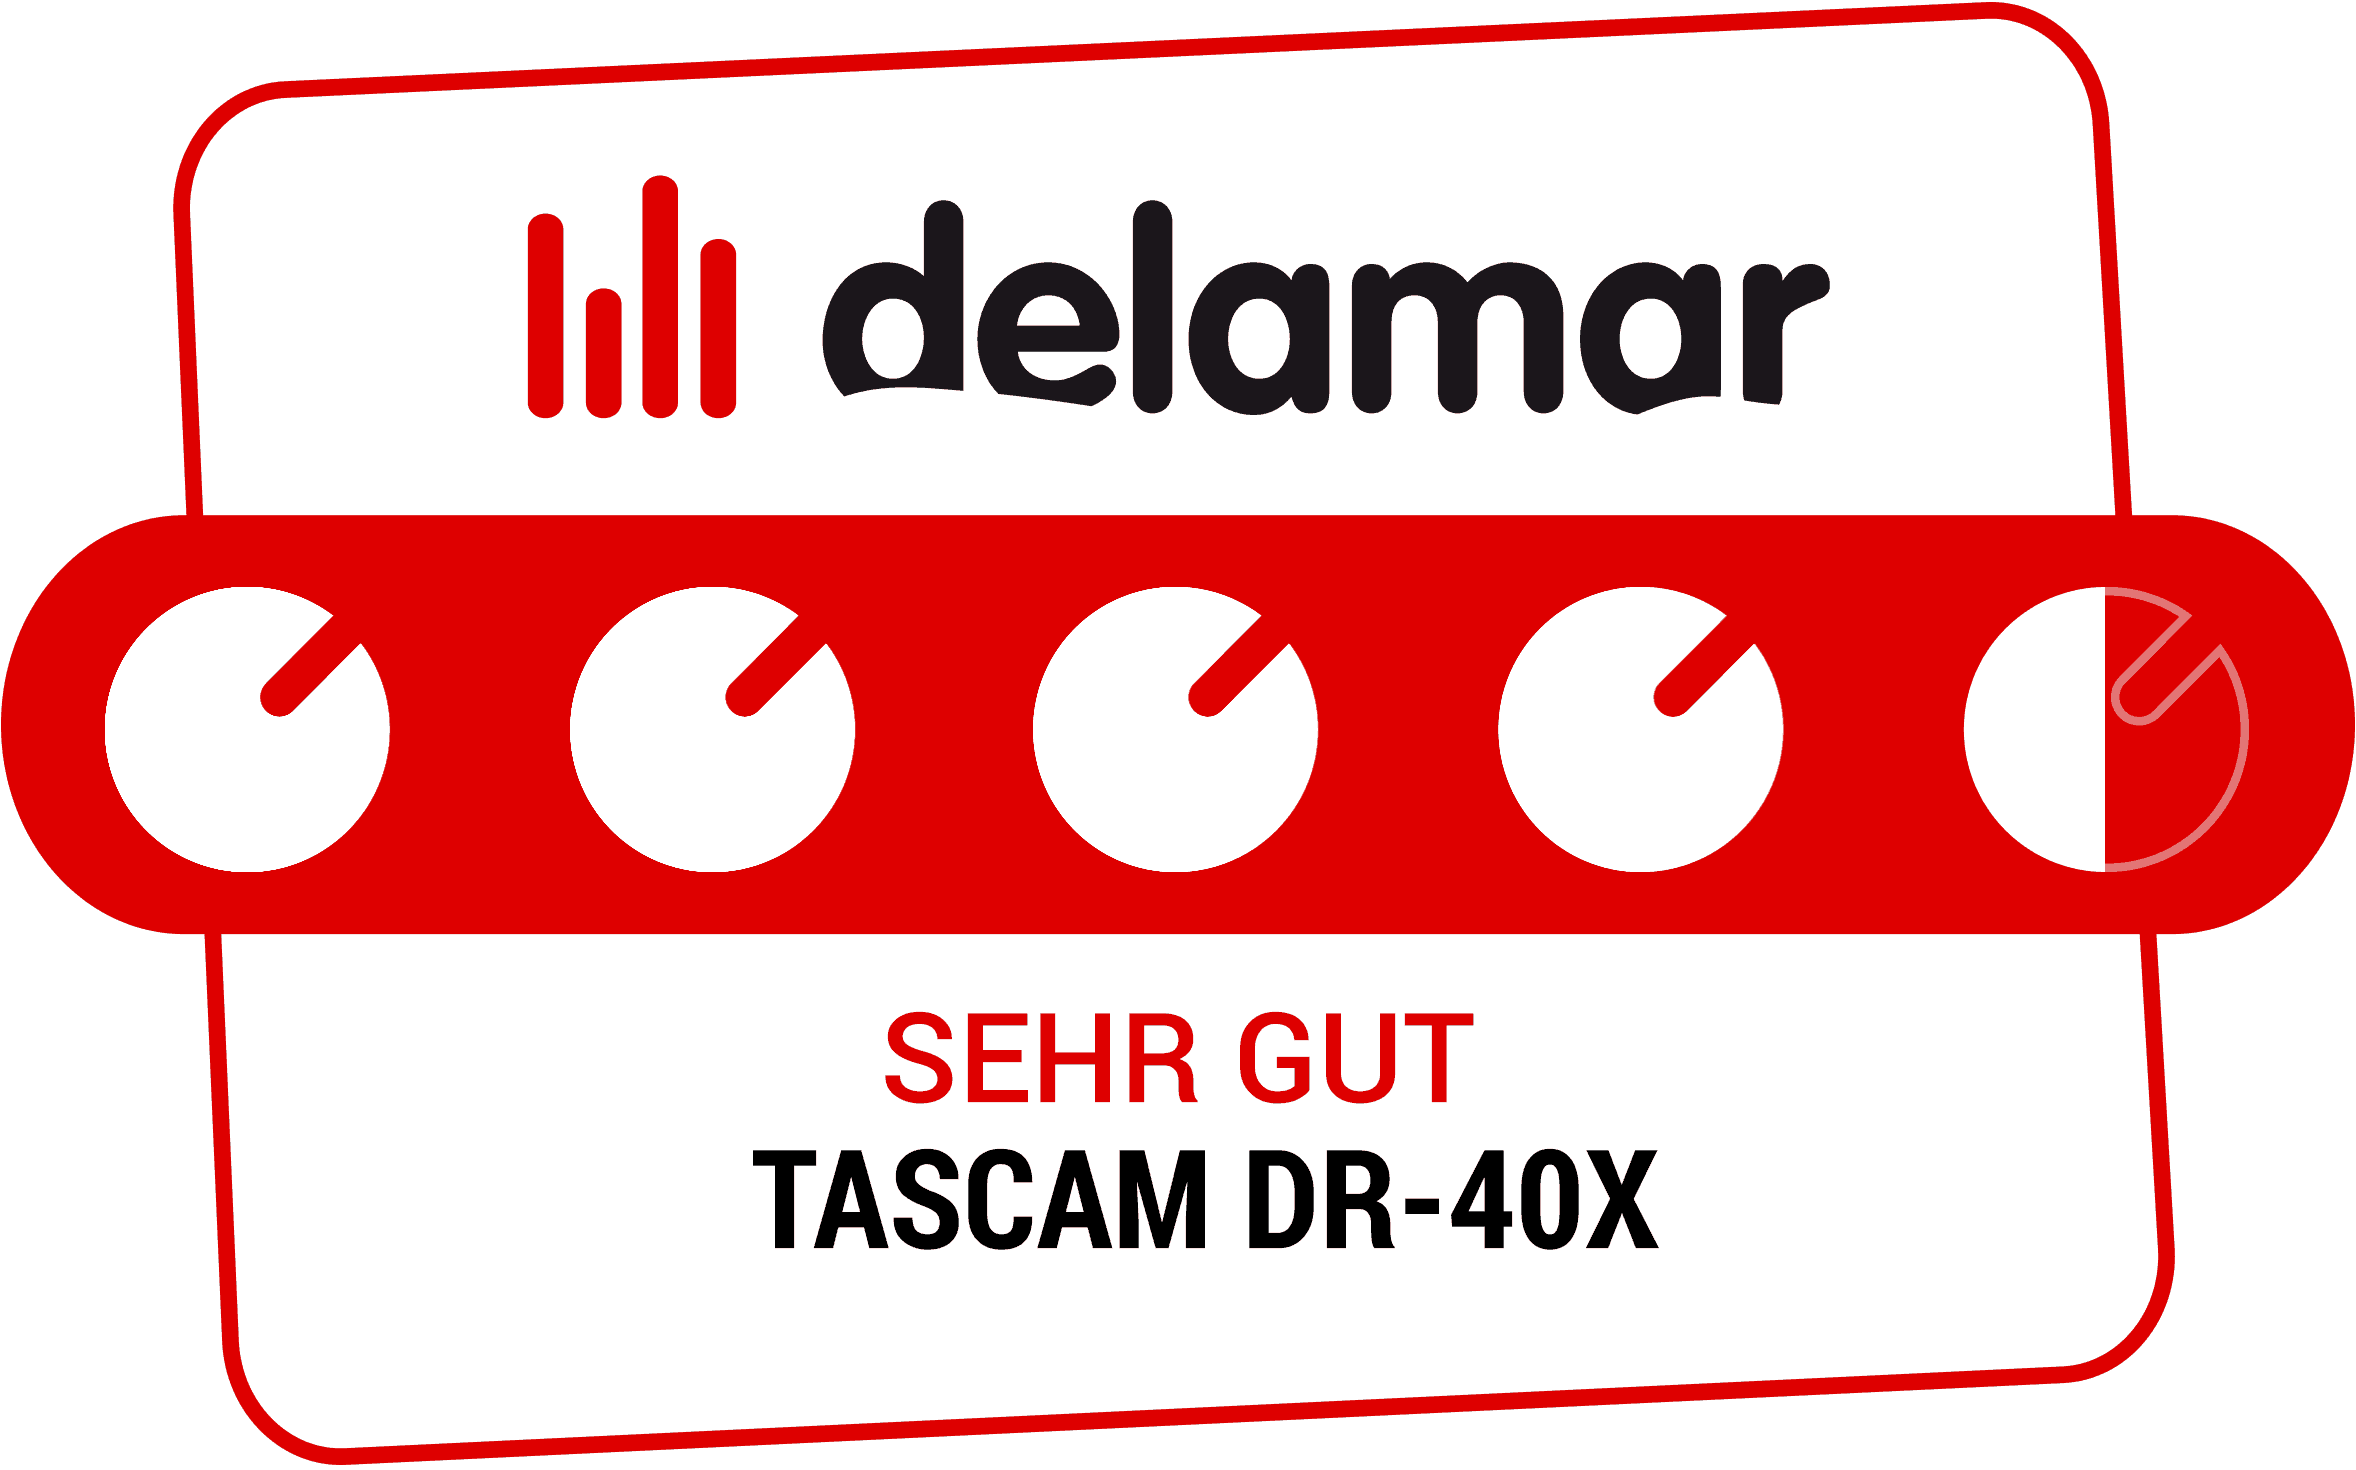 Delamar Testsiegel „Sehr gut“ für Tascam DR-40X